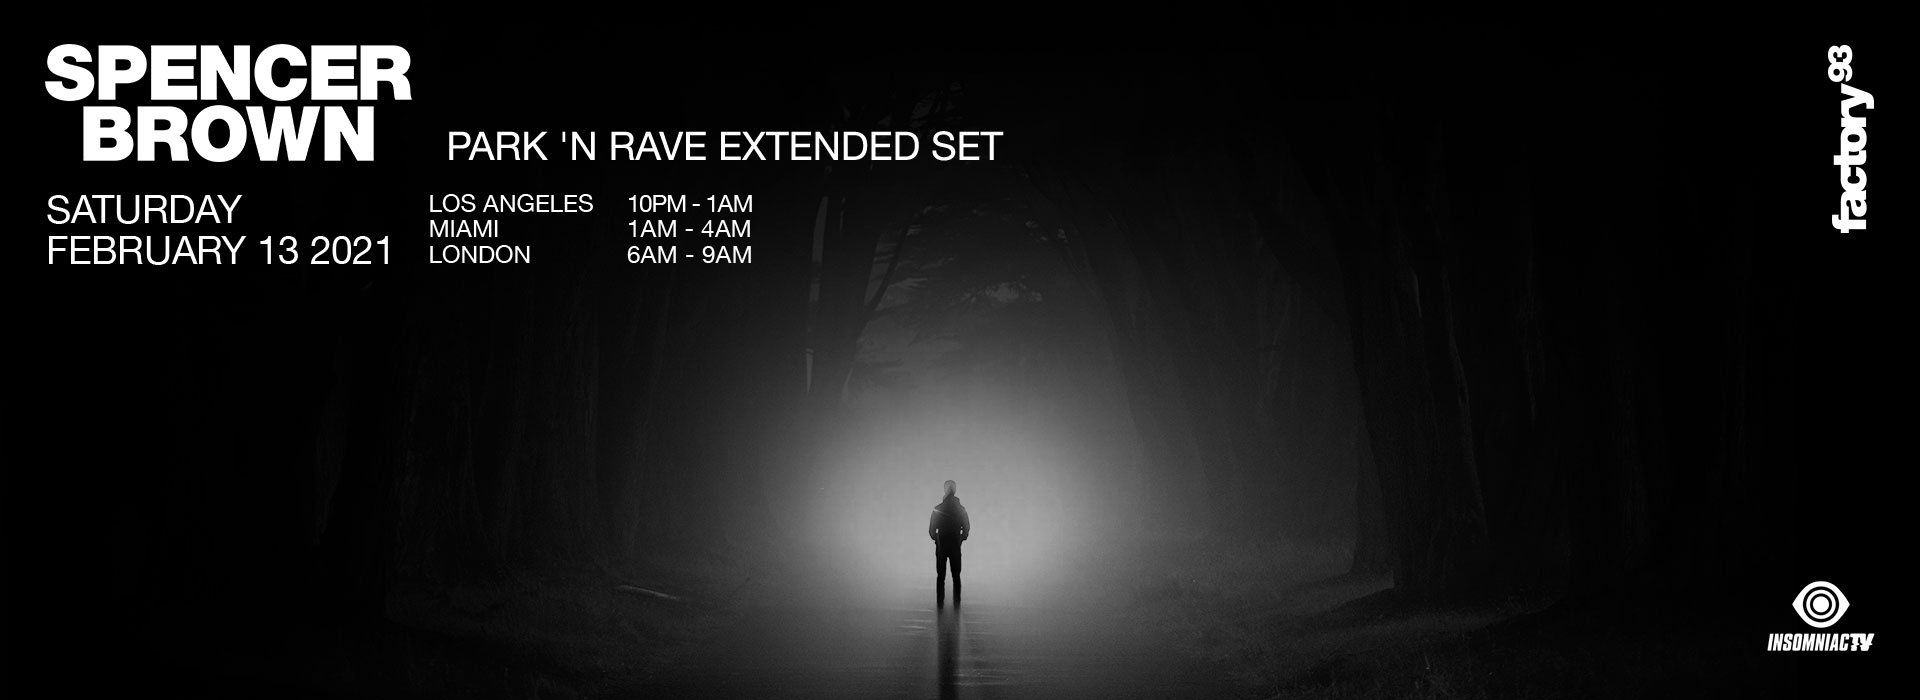 Spencer Brown: Park ‘N Rave Extended Set